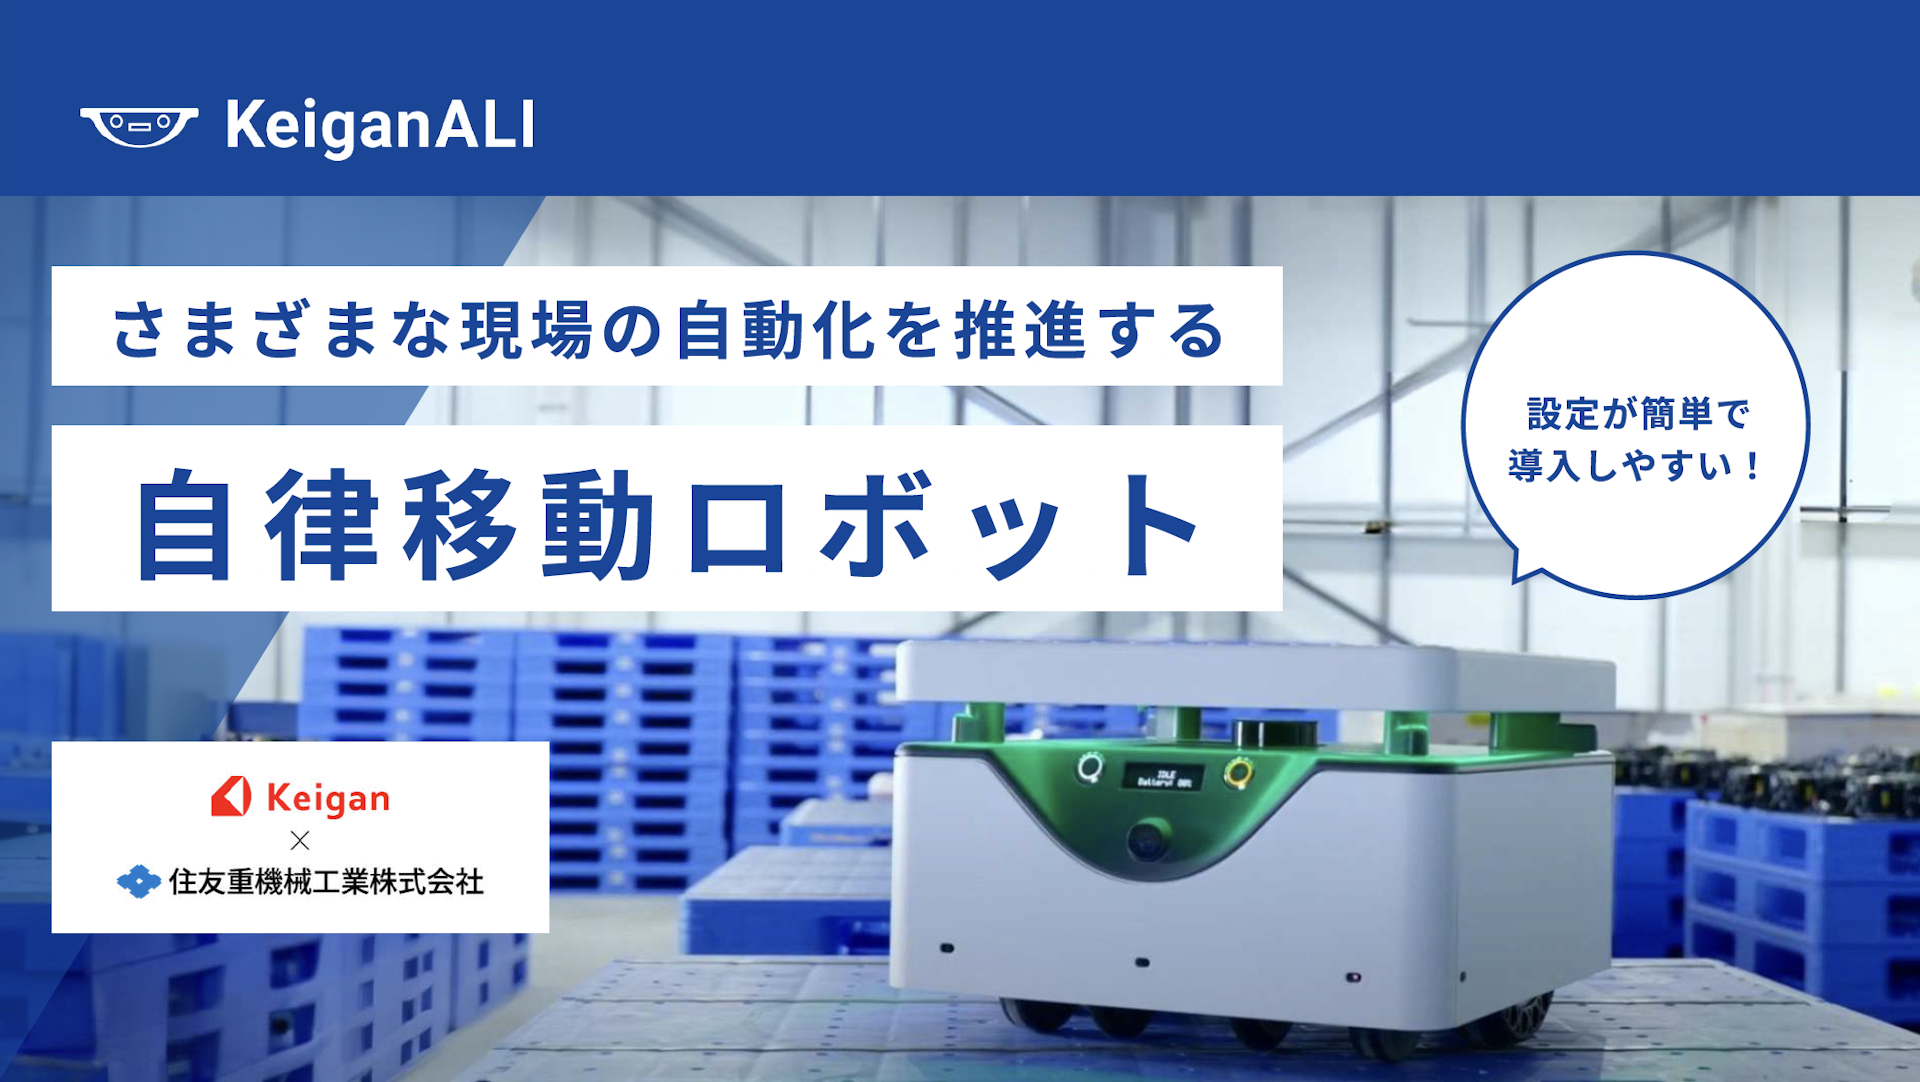 設定が簡単で導入しやすい 自律移動ロボット「KeiganALI」　商品資料